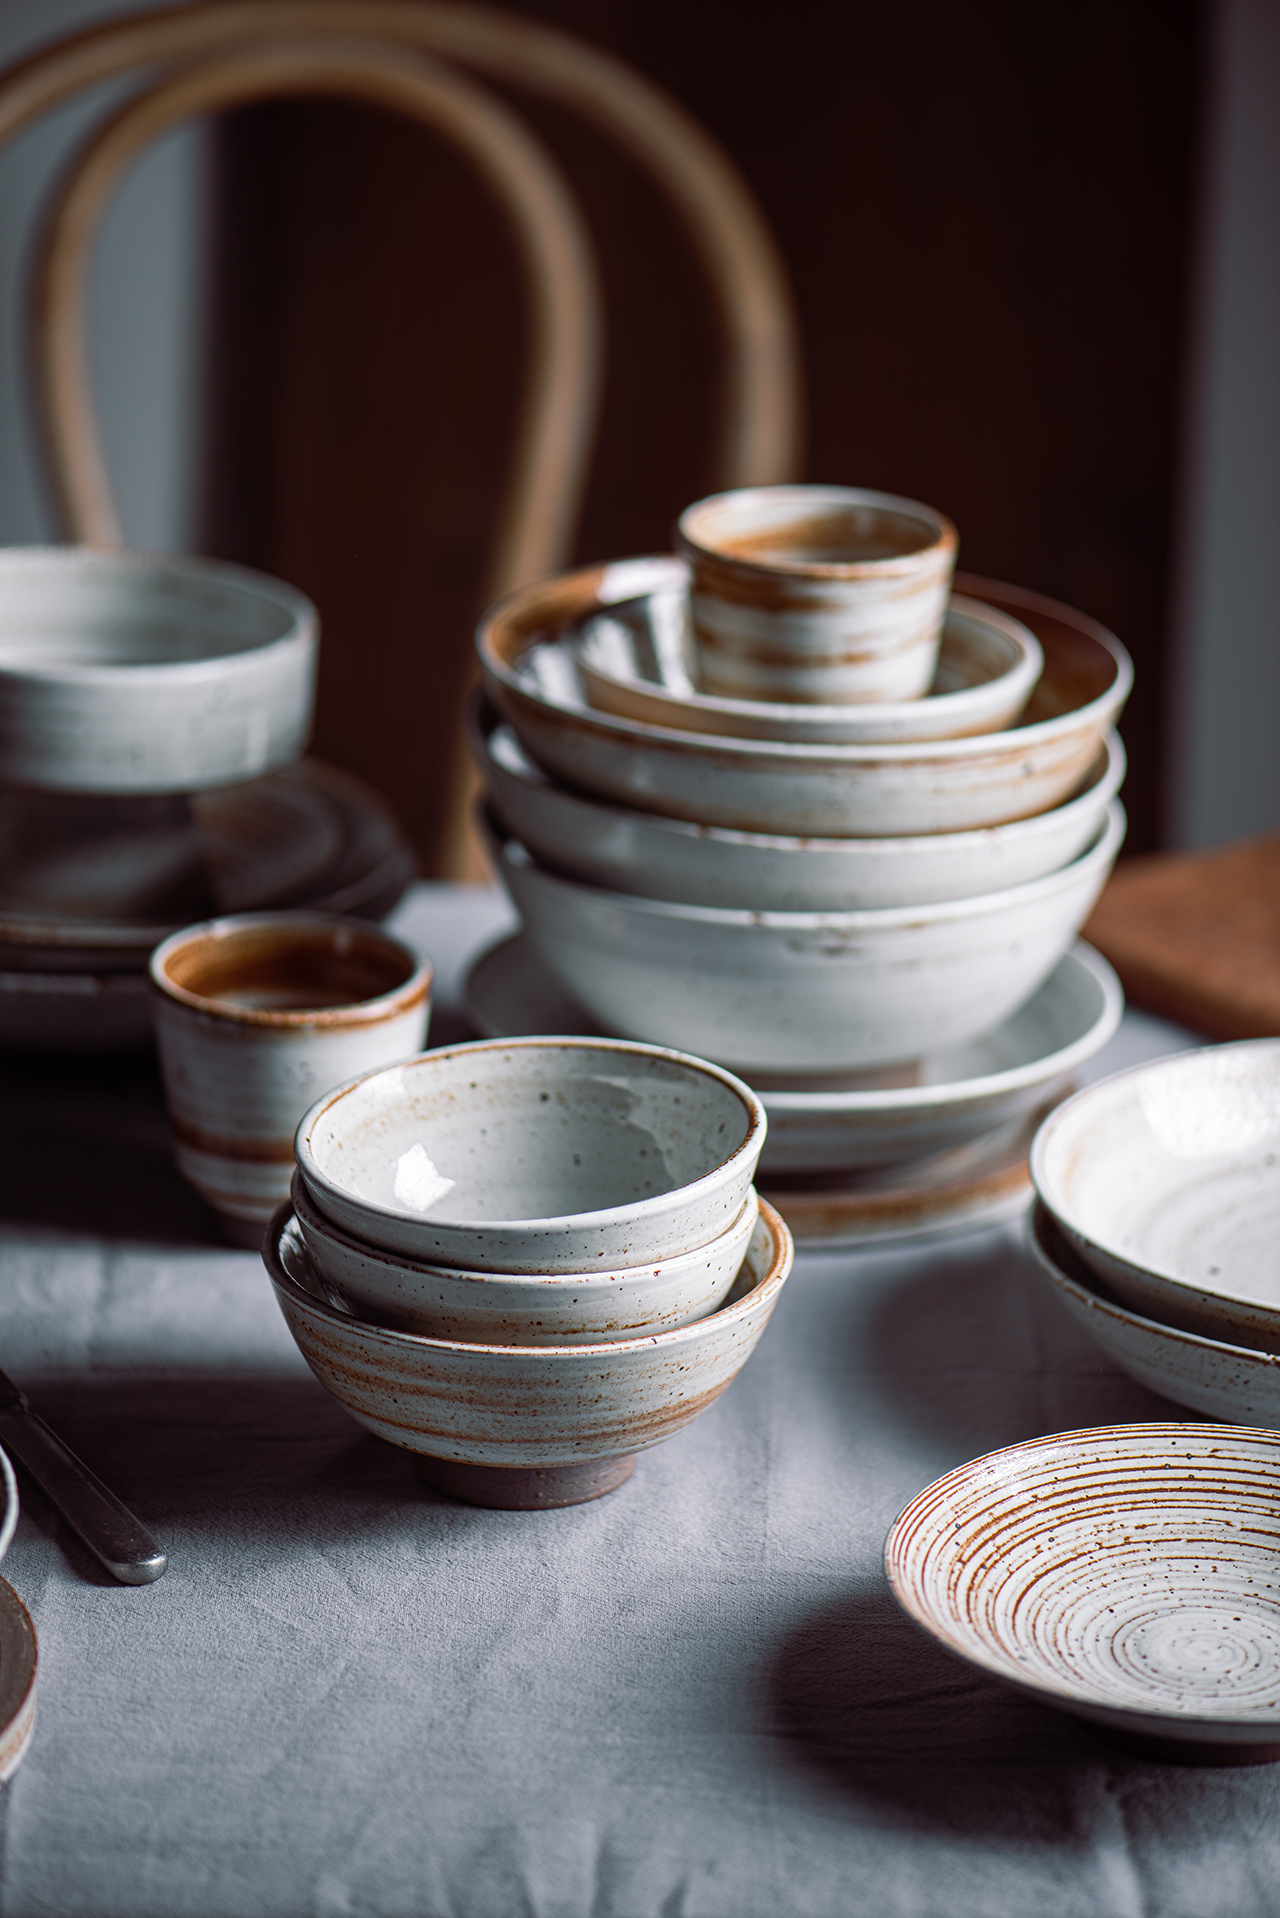 日式粗陶陶瓷餐具套装美食摄影手作柴烧汤碗饭碗菜盘中餐古朴道具